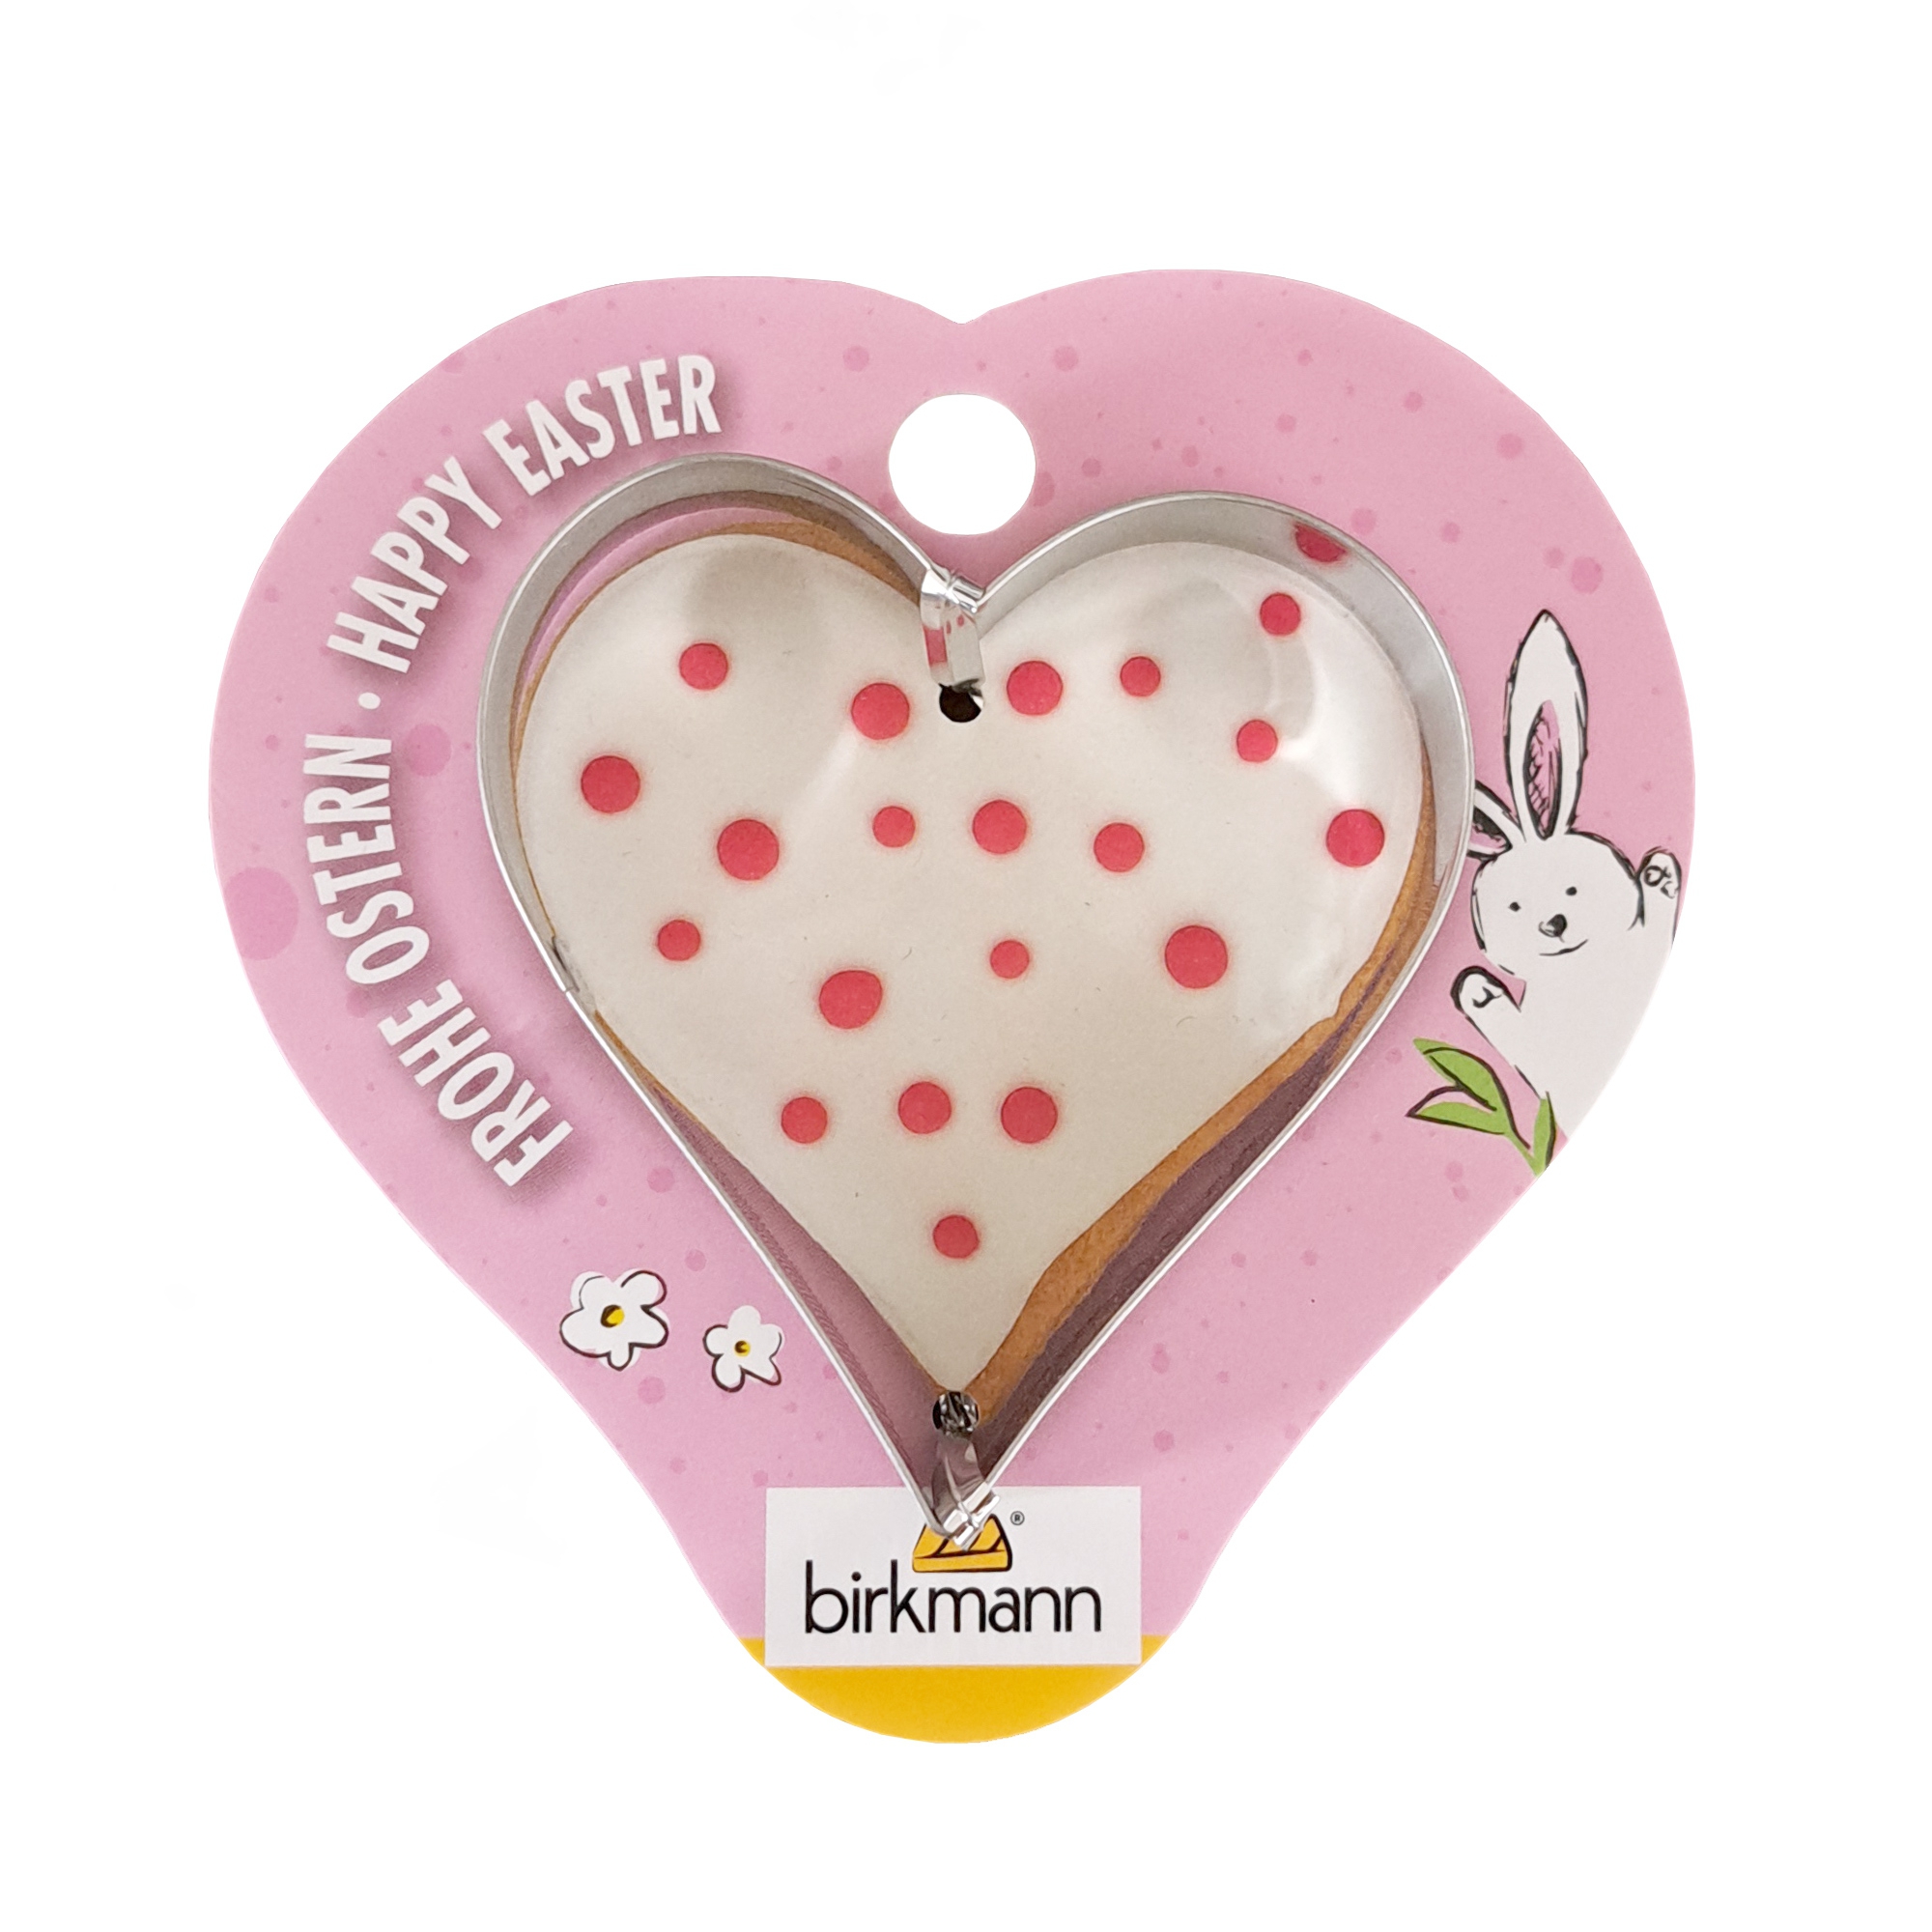 Birkmann - Easter cookie cutter - different motifs - Heart